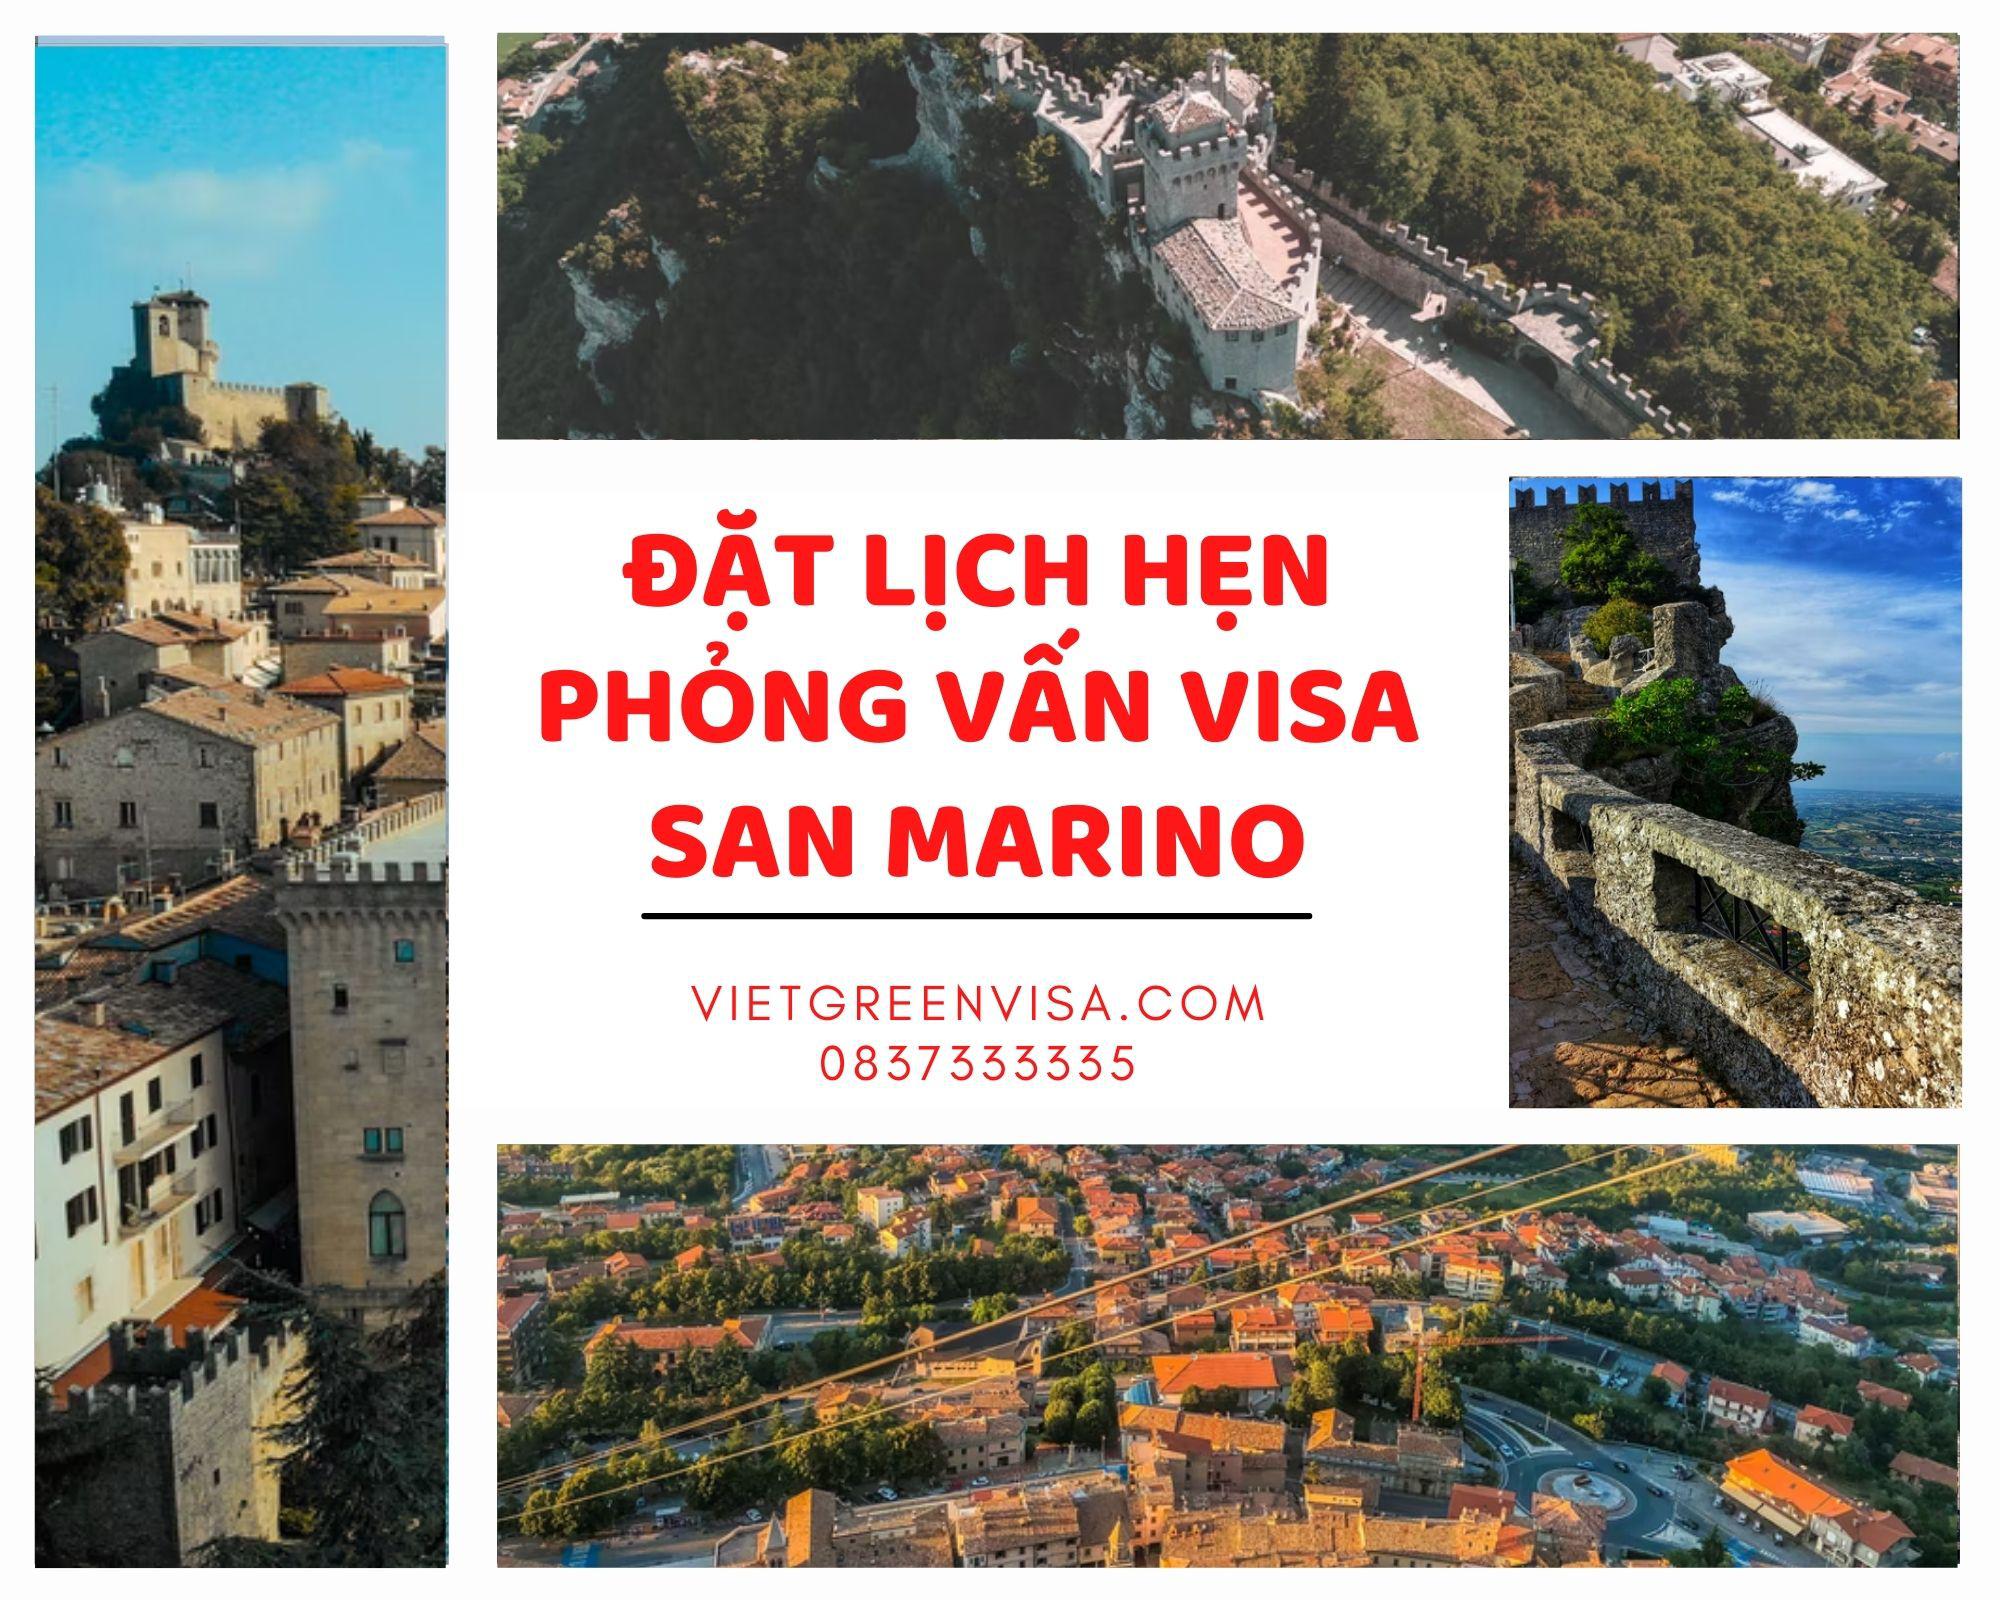 Hỗ trợ đặt lịch hẹn phỏng vấn visa San Marino